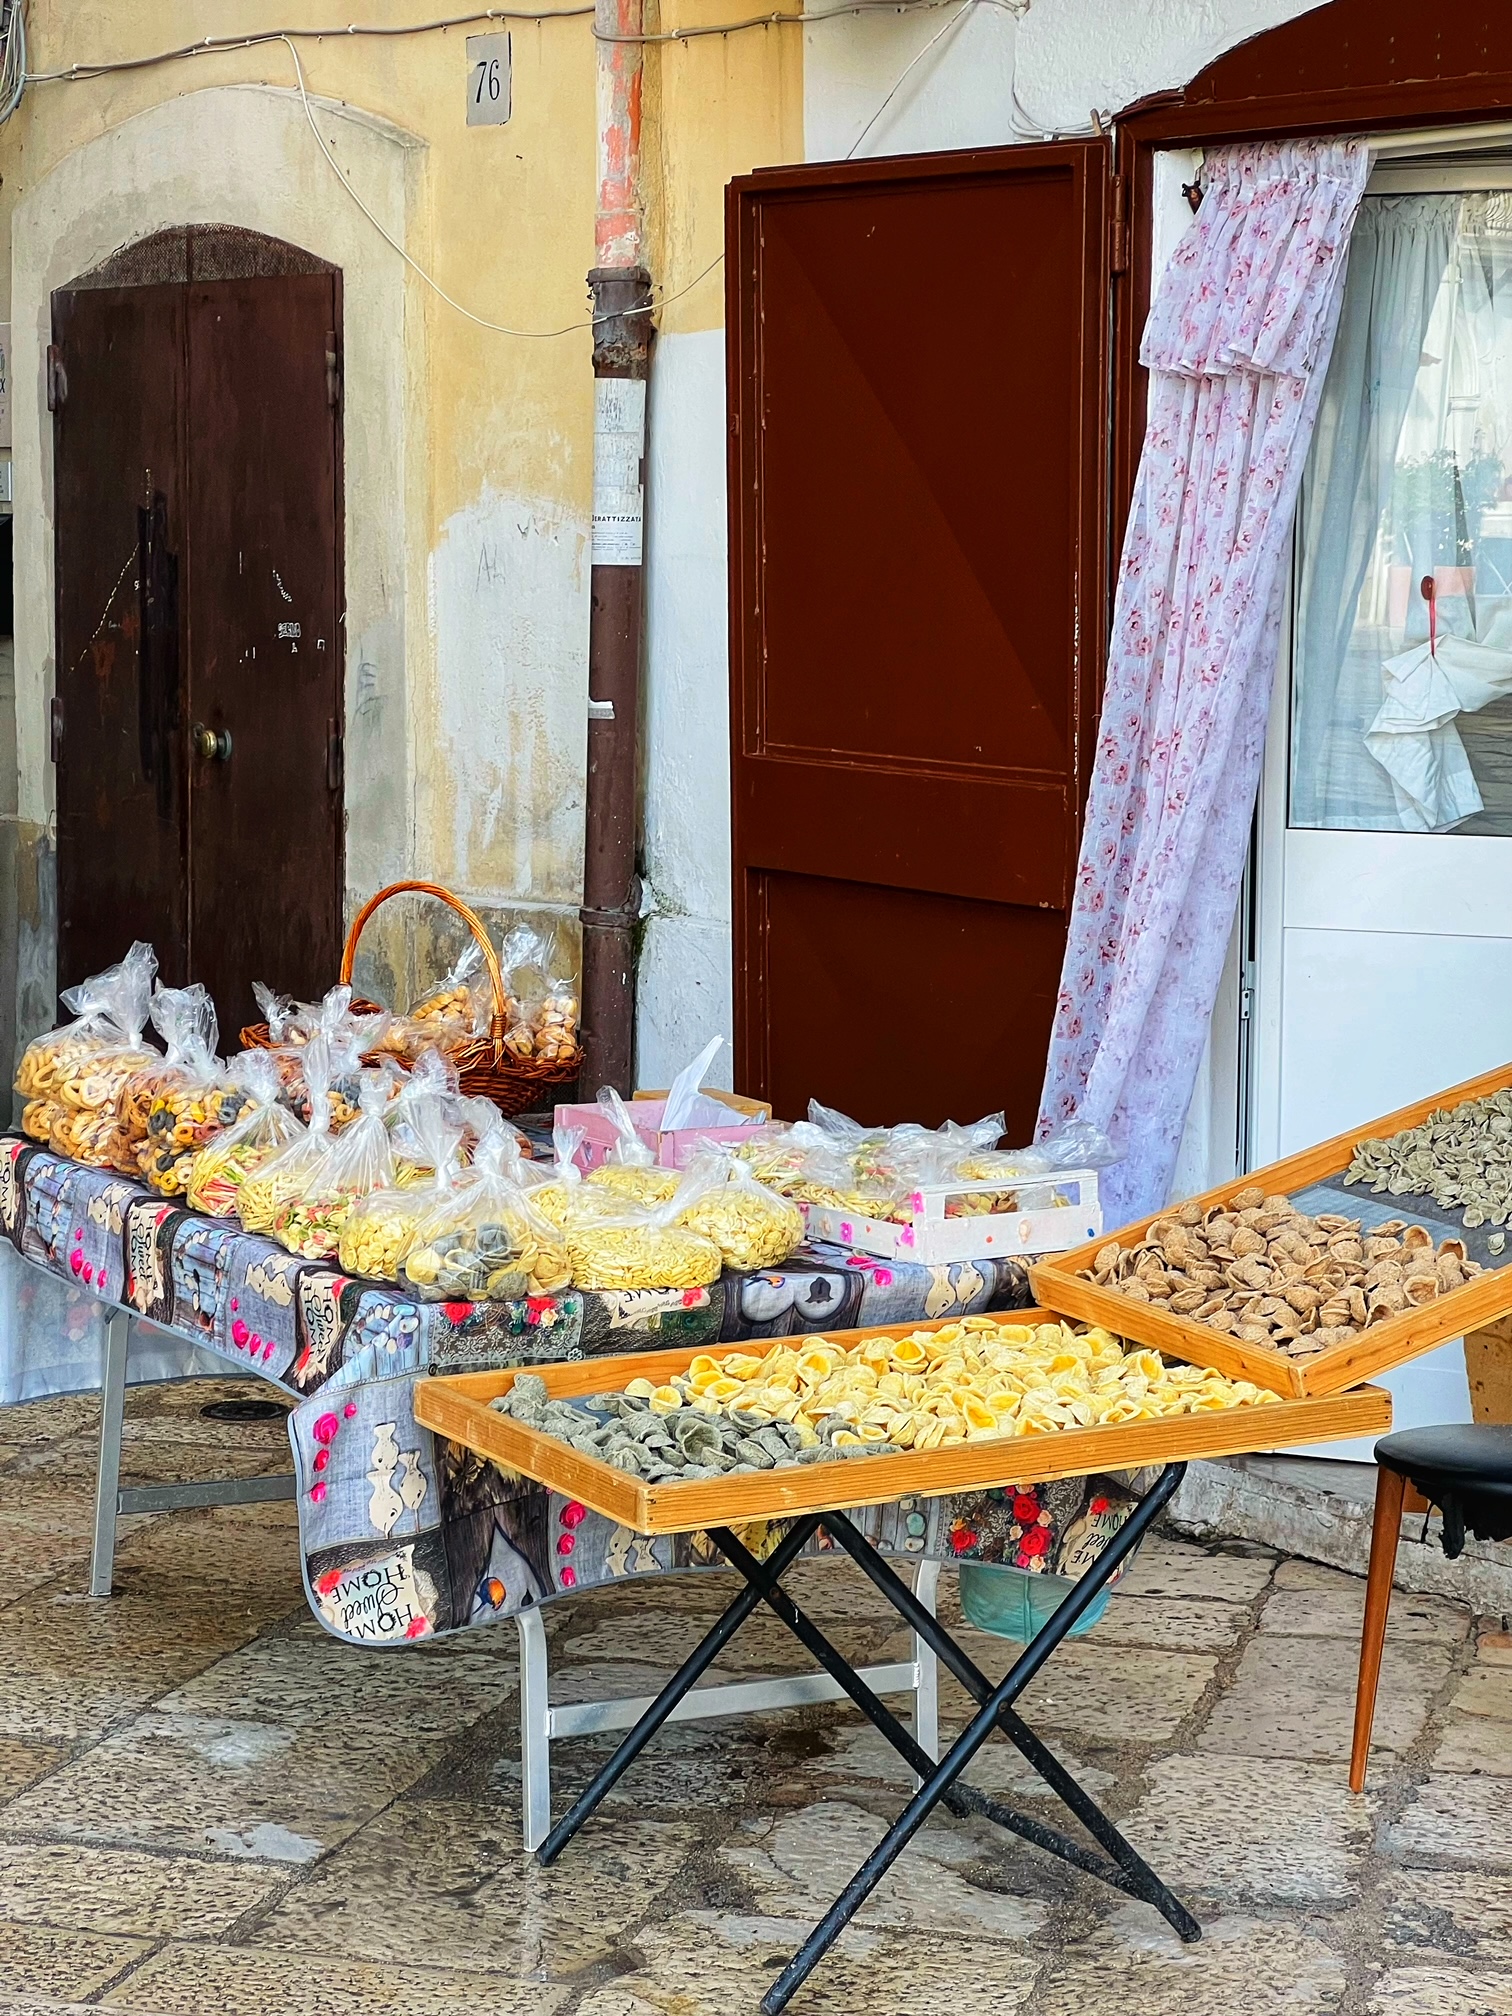 Bari’s strada delle orecchiette the street where local women make pasta